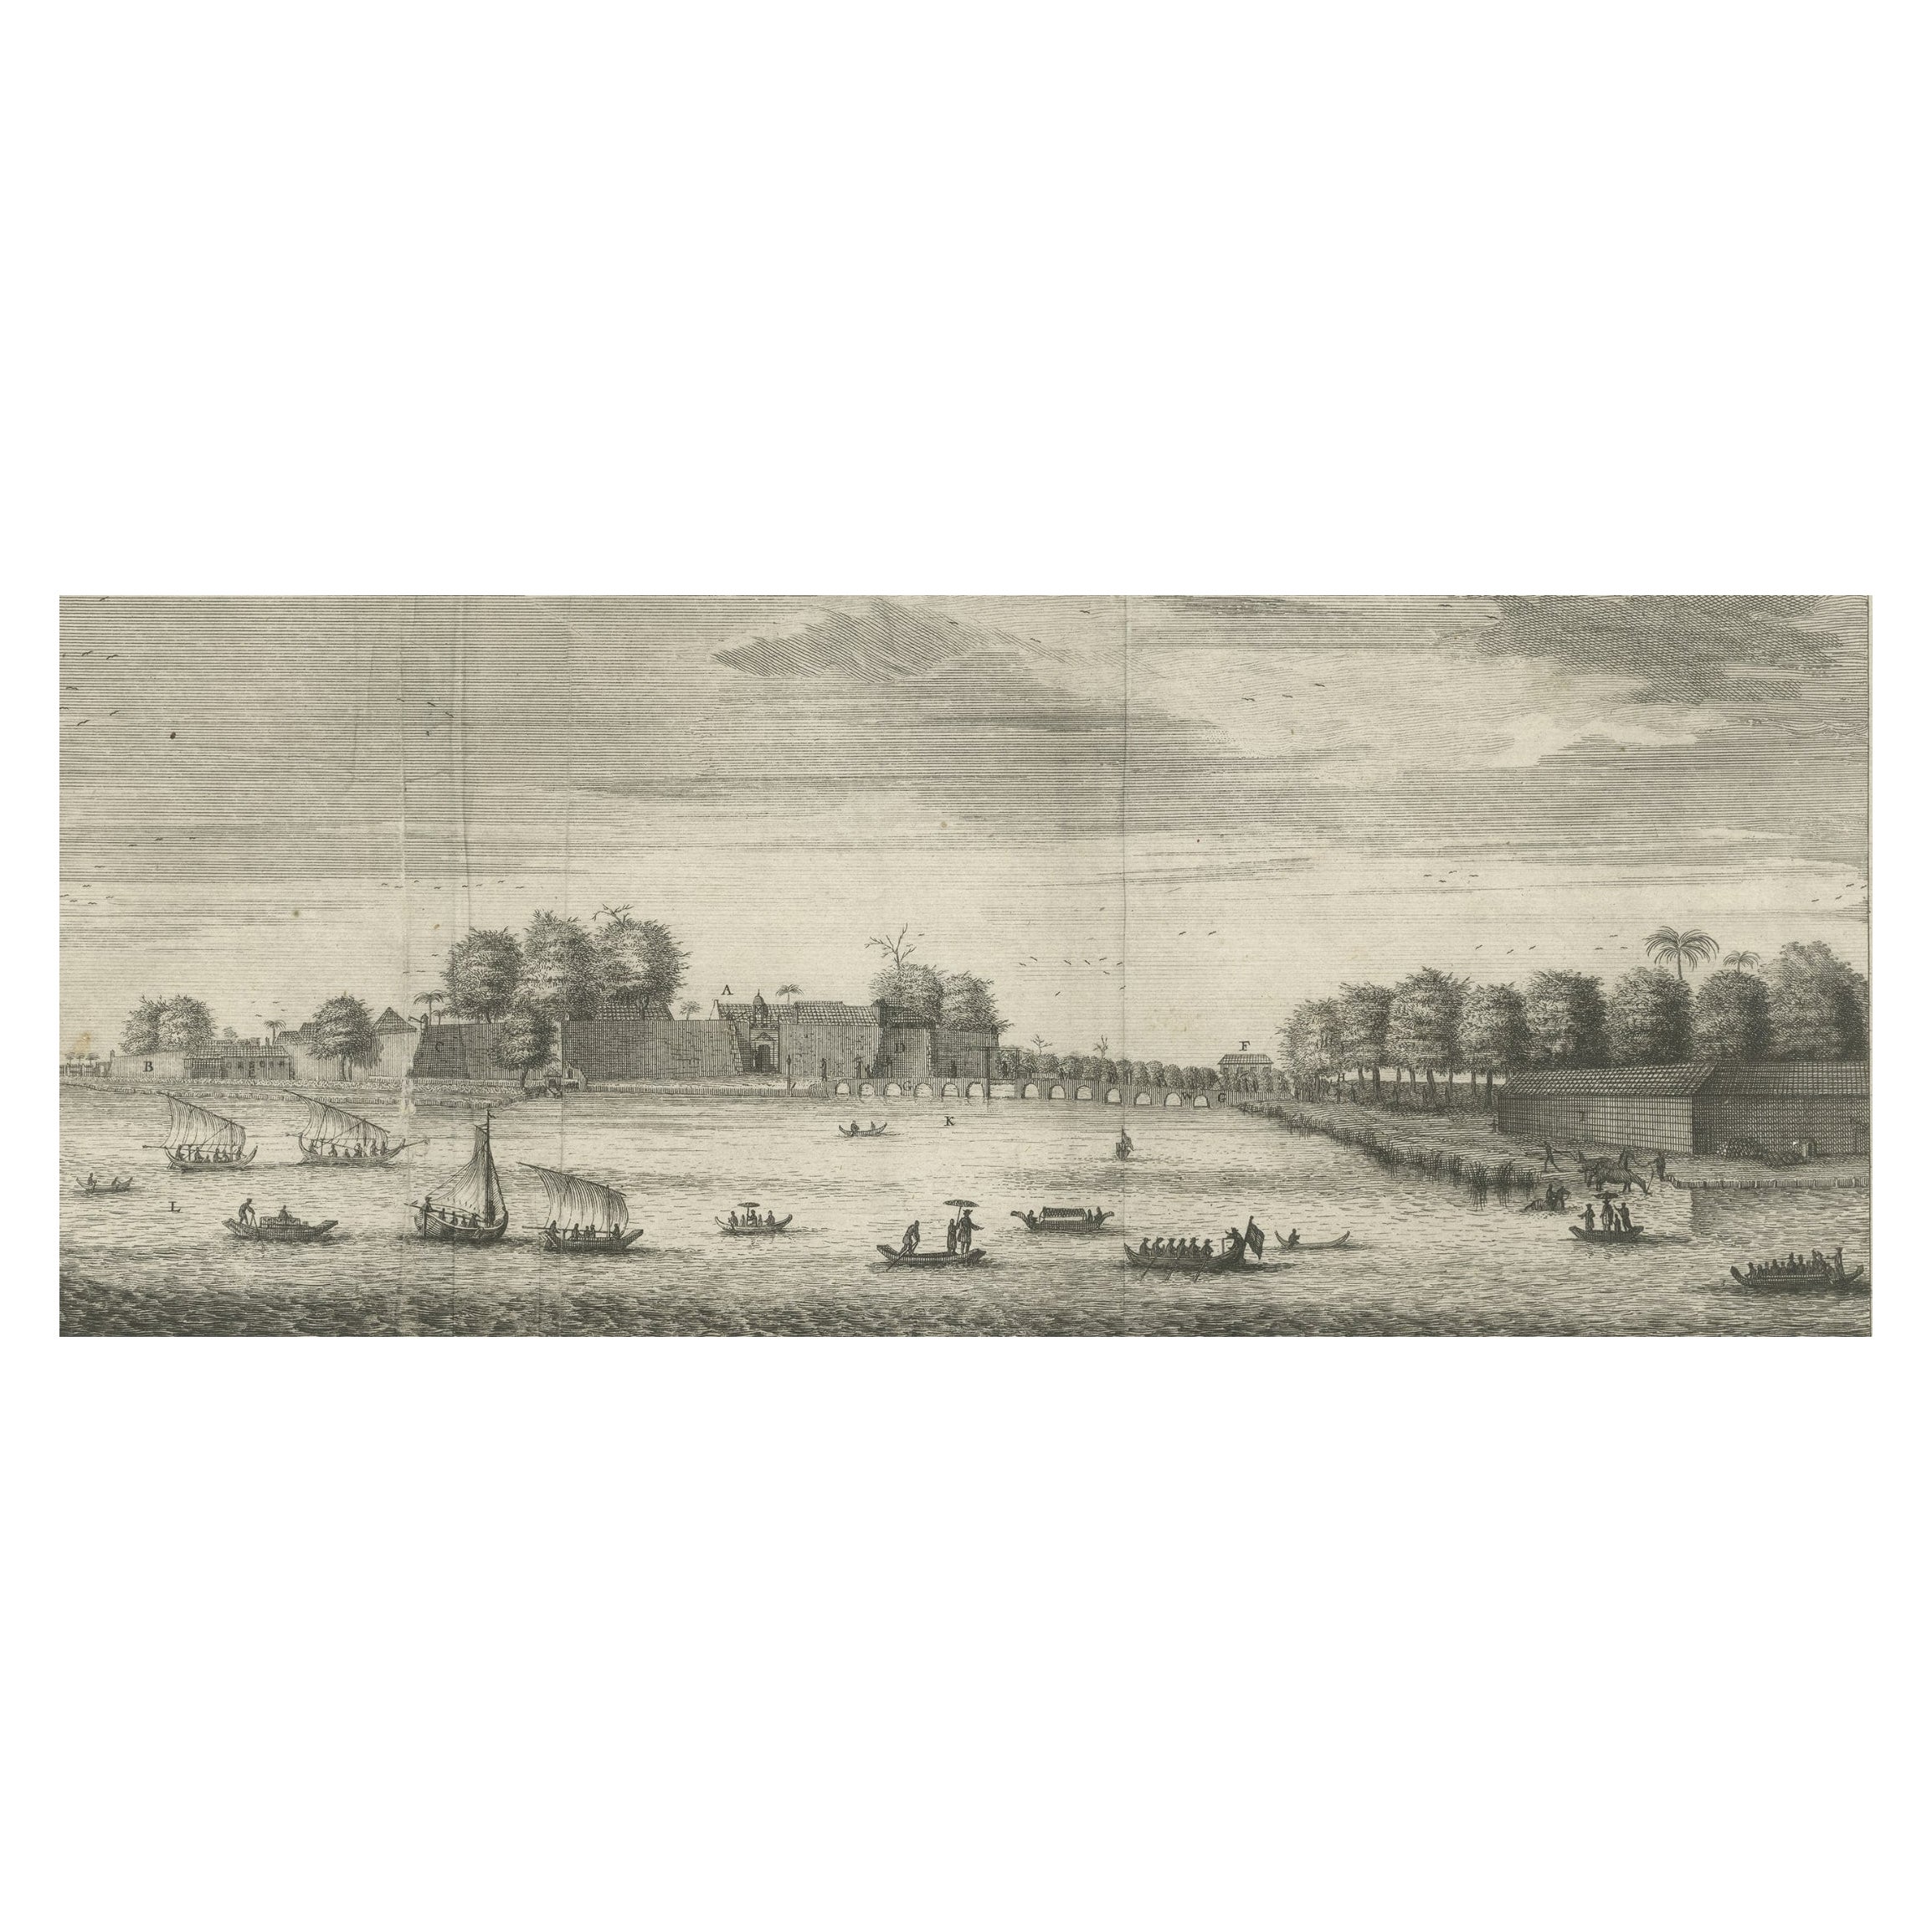 Das Schloss Batavia (Jakarta) in Niederländisch-Ostindien ( Indonesien), 1726